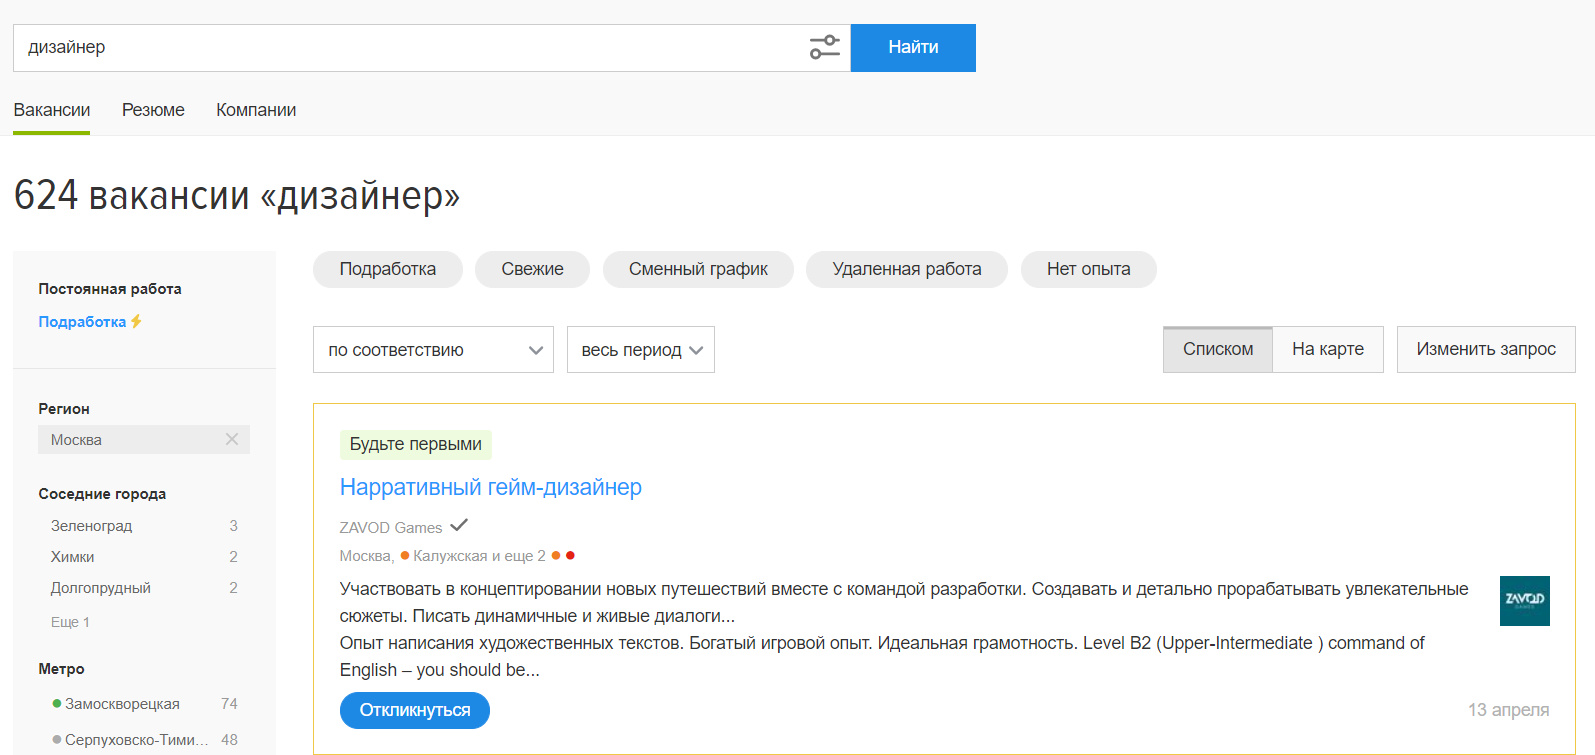 Вакансий на hh.ru много, а проектов на сайтах фриланса и в чатах Телеграма – еще больше